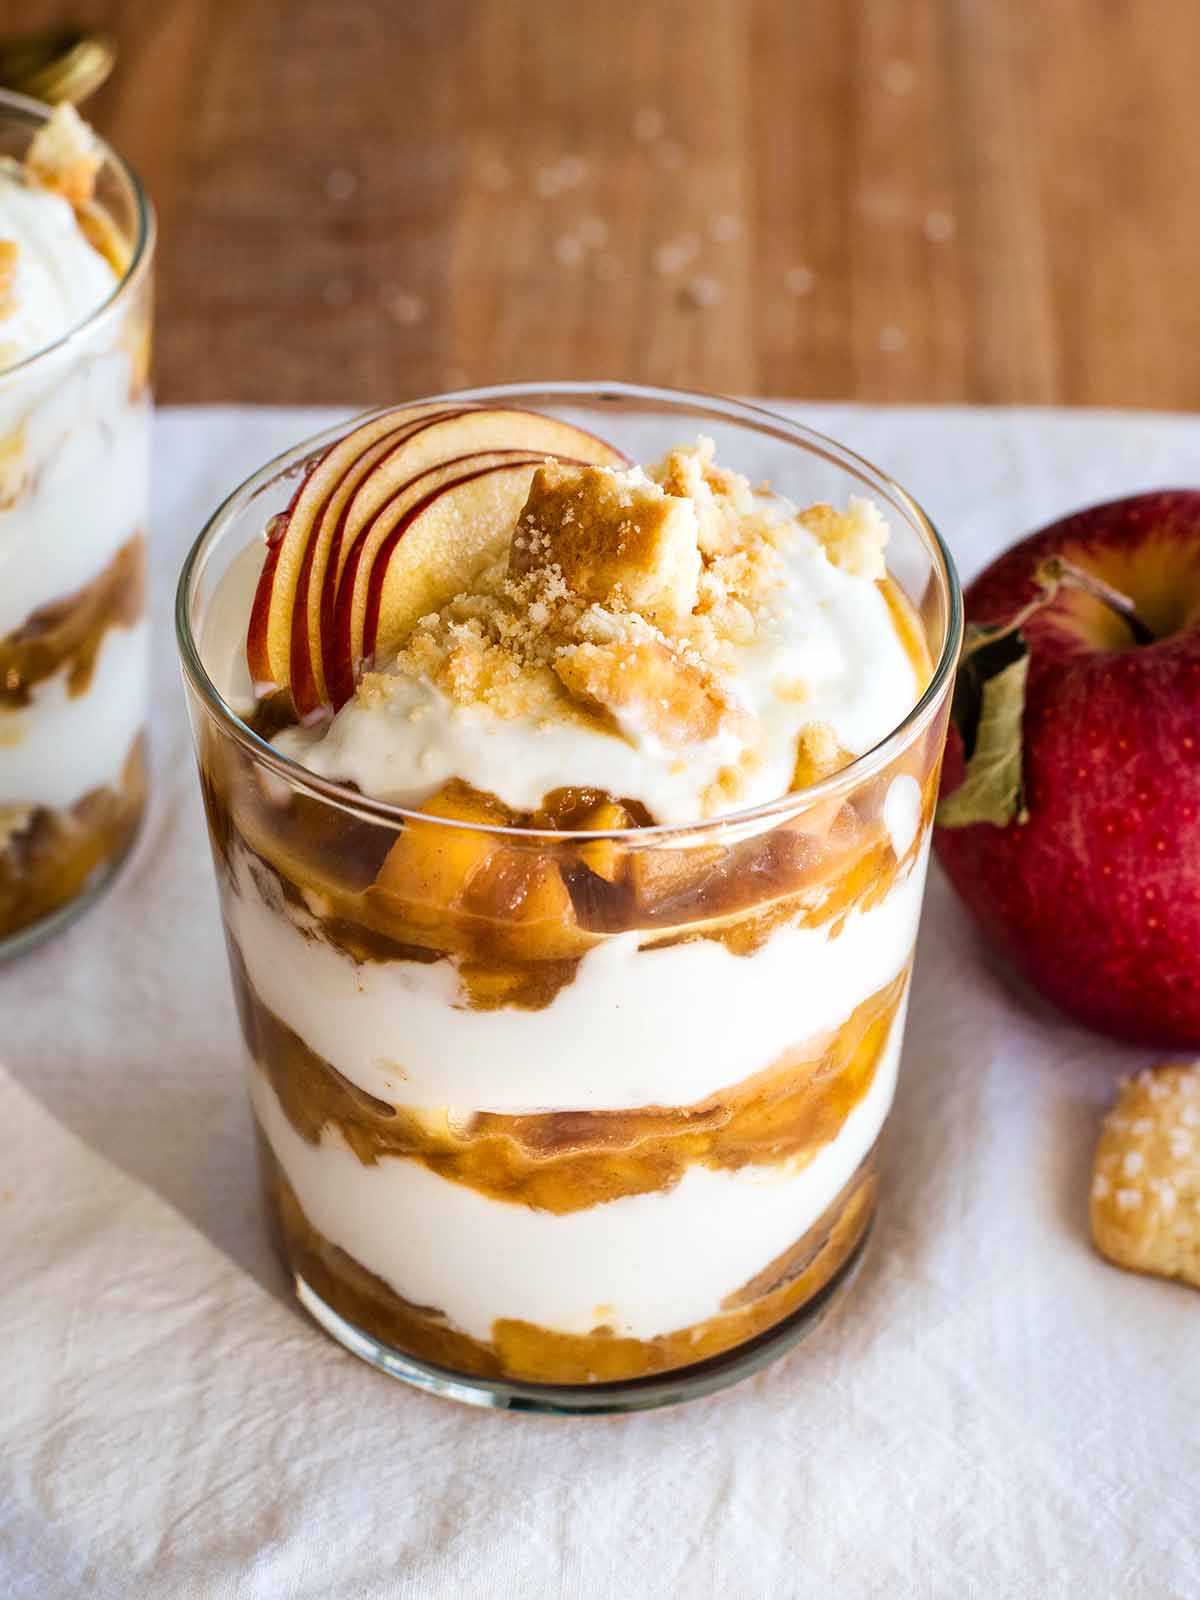 caramelized apple yogurt parfaits dessert jars